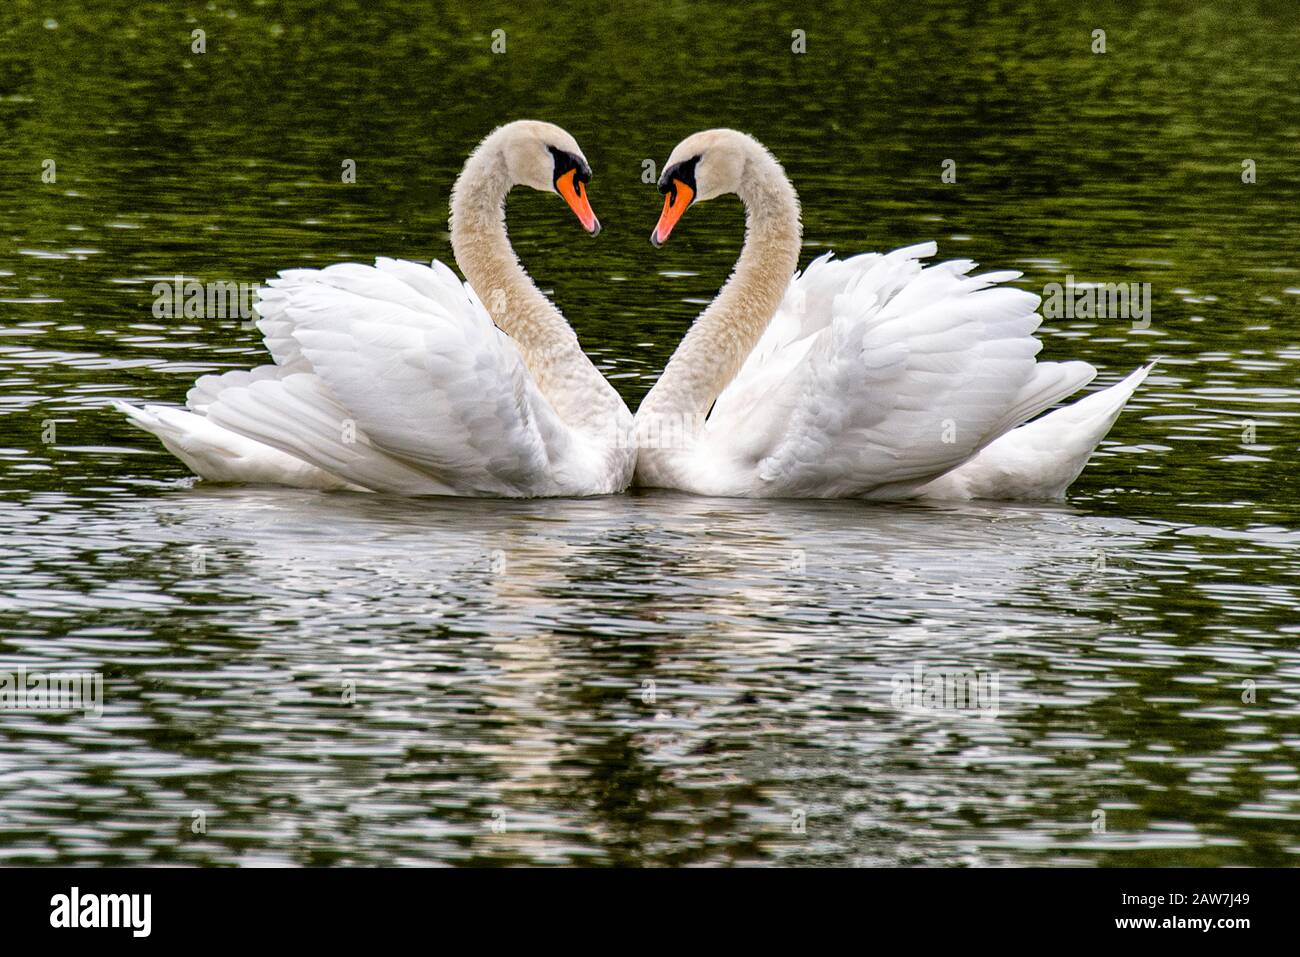 san valentino, San Valentino, San Valentino, San Valentino, romantici due cigni su un lago, simbolo cuore forma d'amore, San Valentino Foto Stock